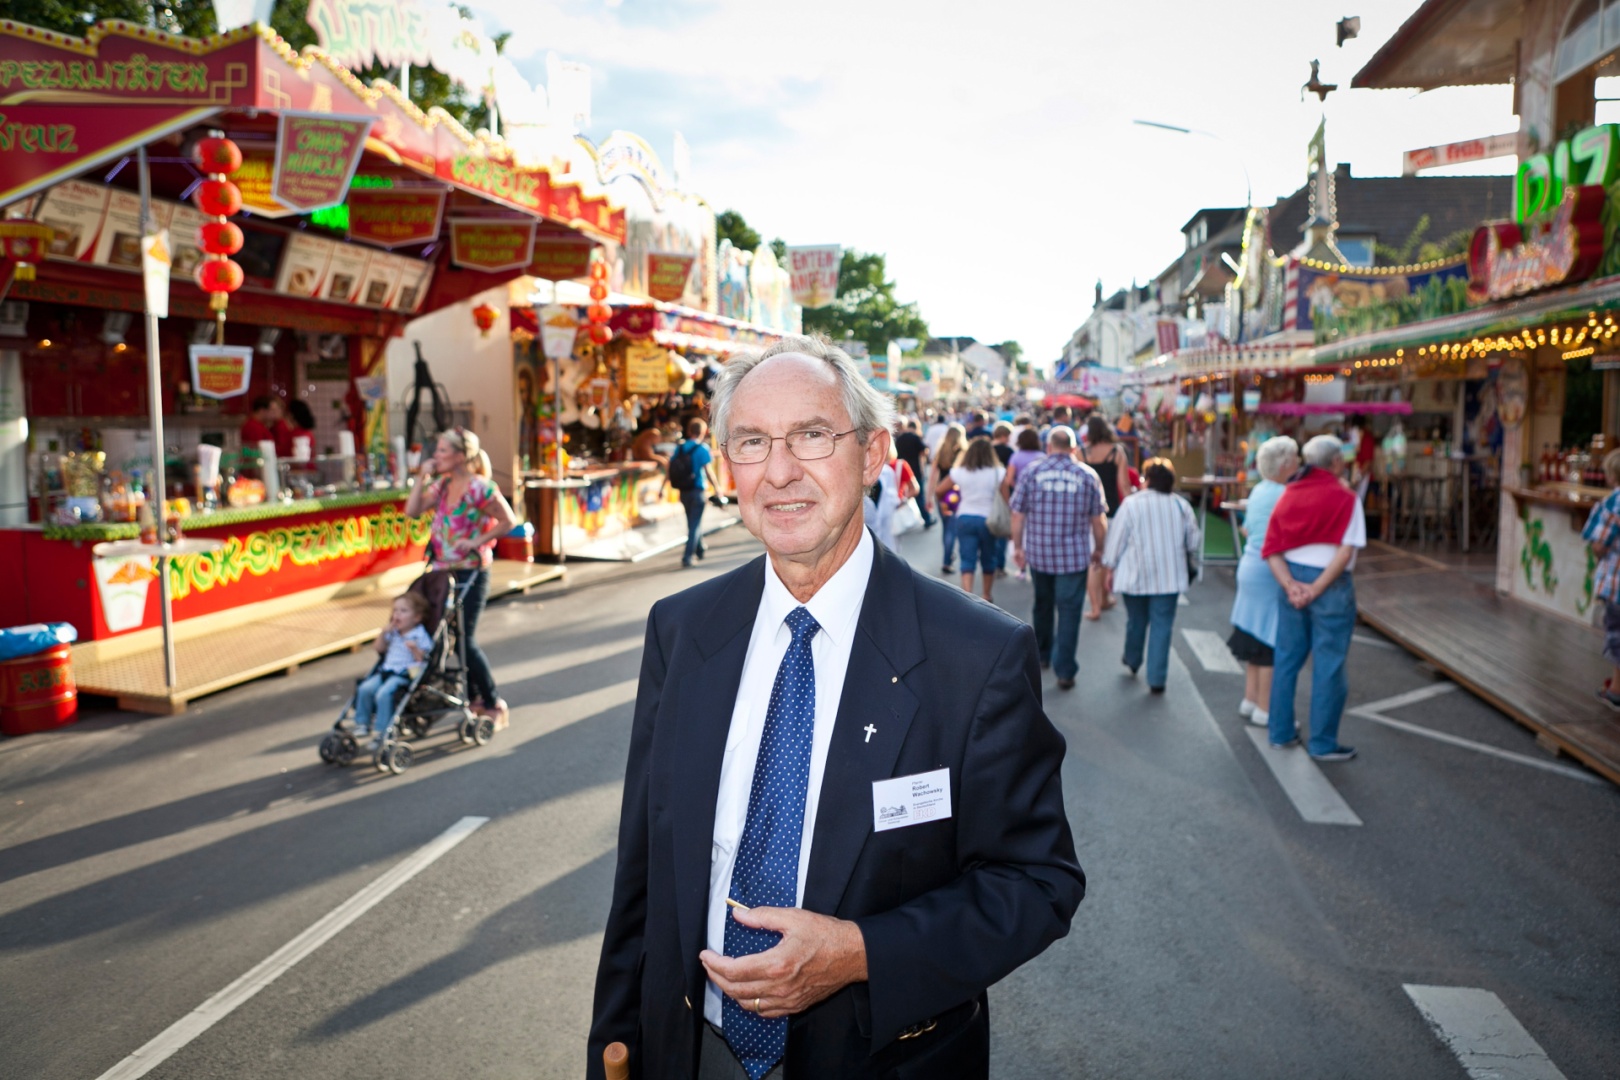 Kirmespfarrer Robert Wachowsky  auf dem Jahrmarkt "Pützchens Markt" in Bonn